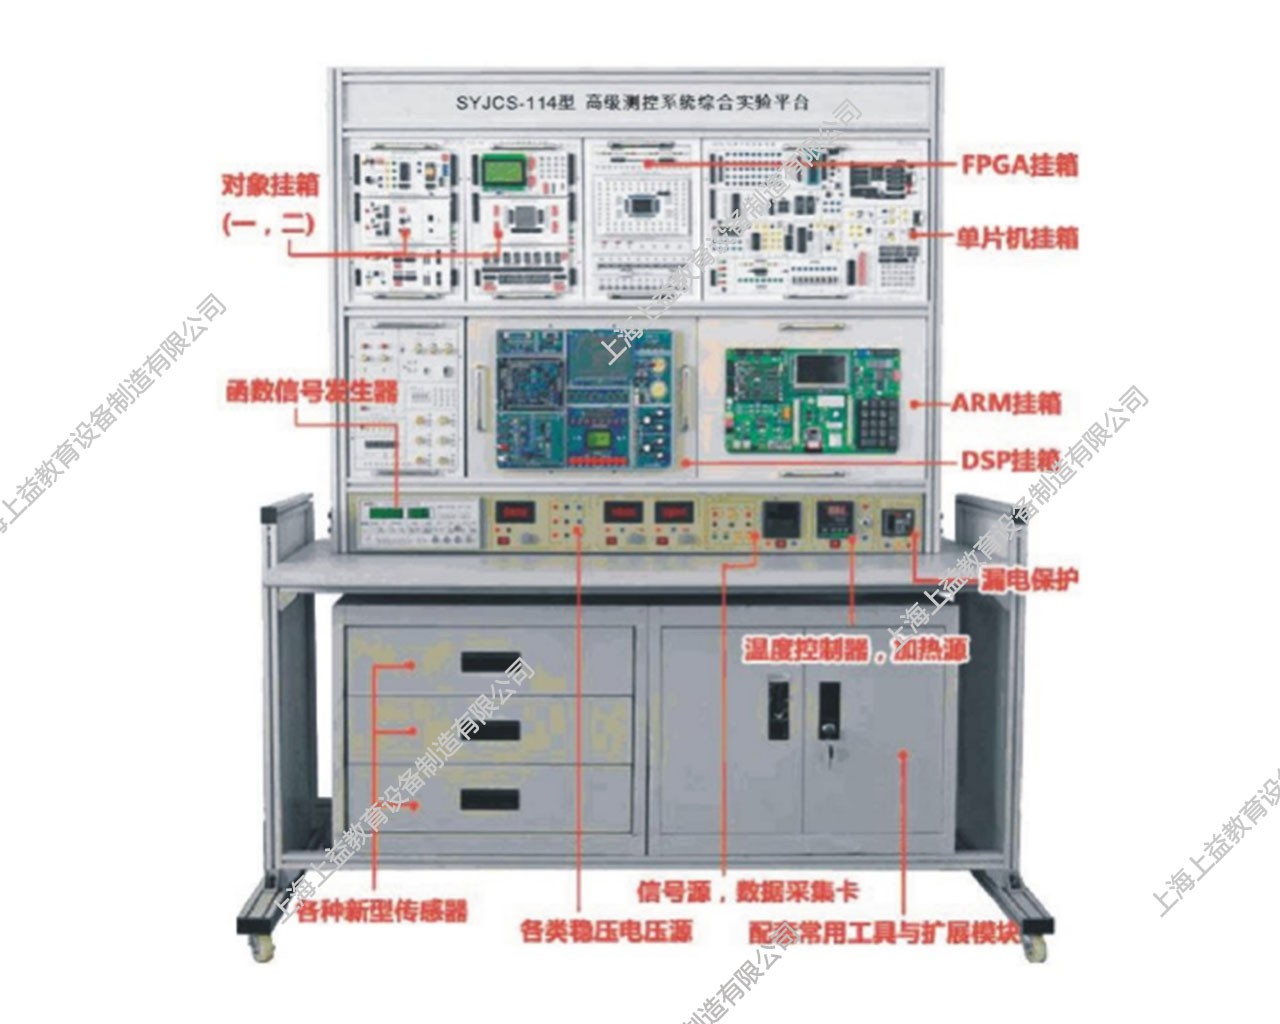 SYJCS-114 高级测控系统综合实验平台